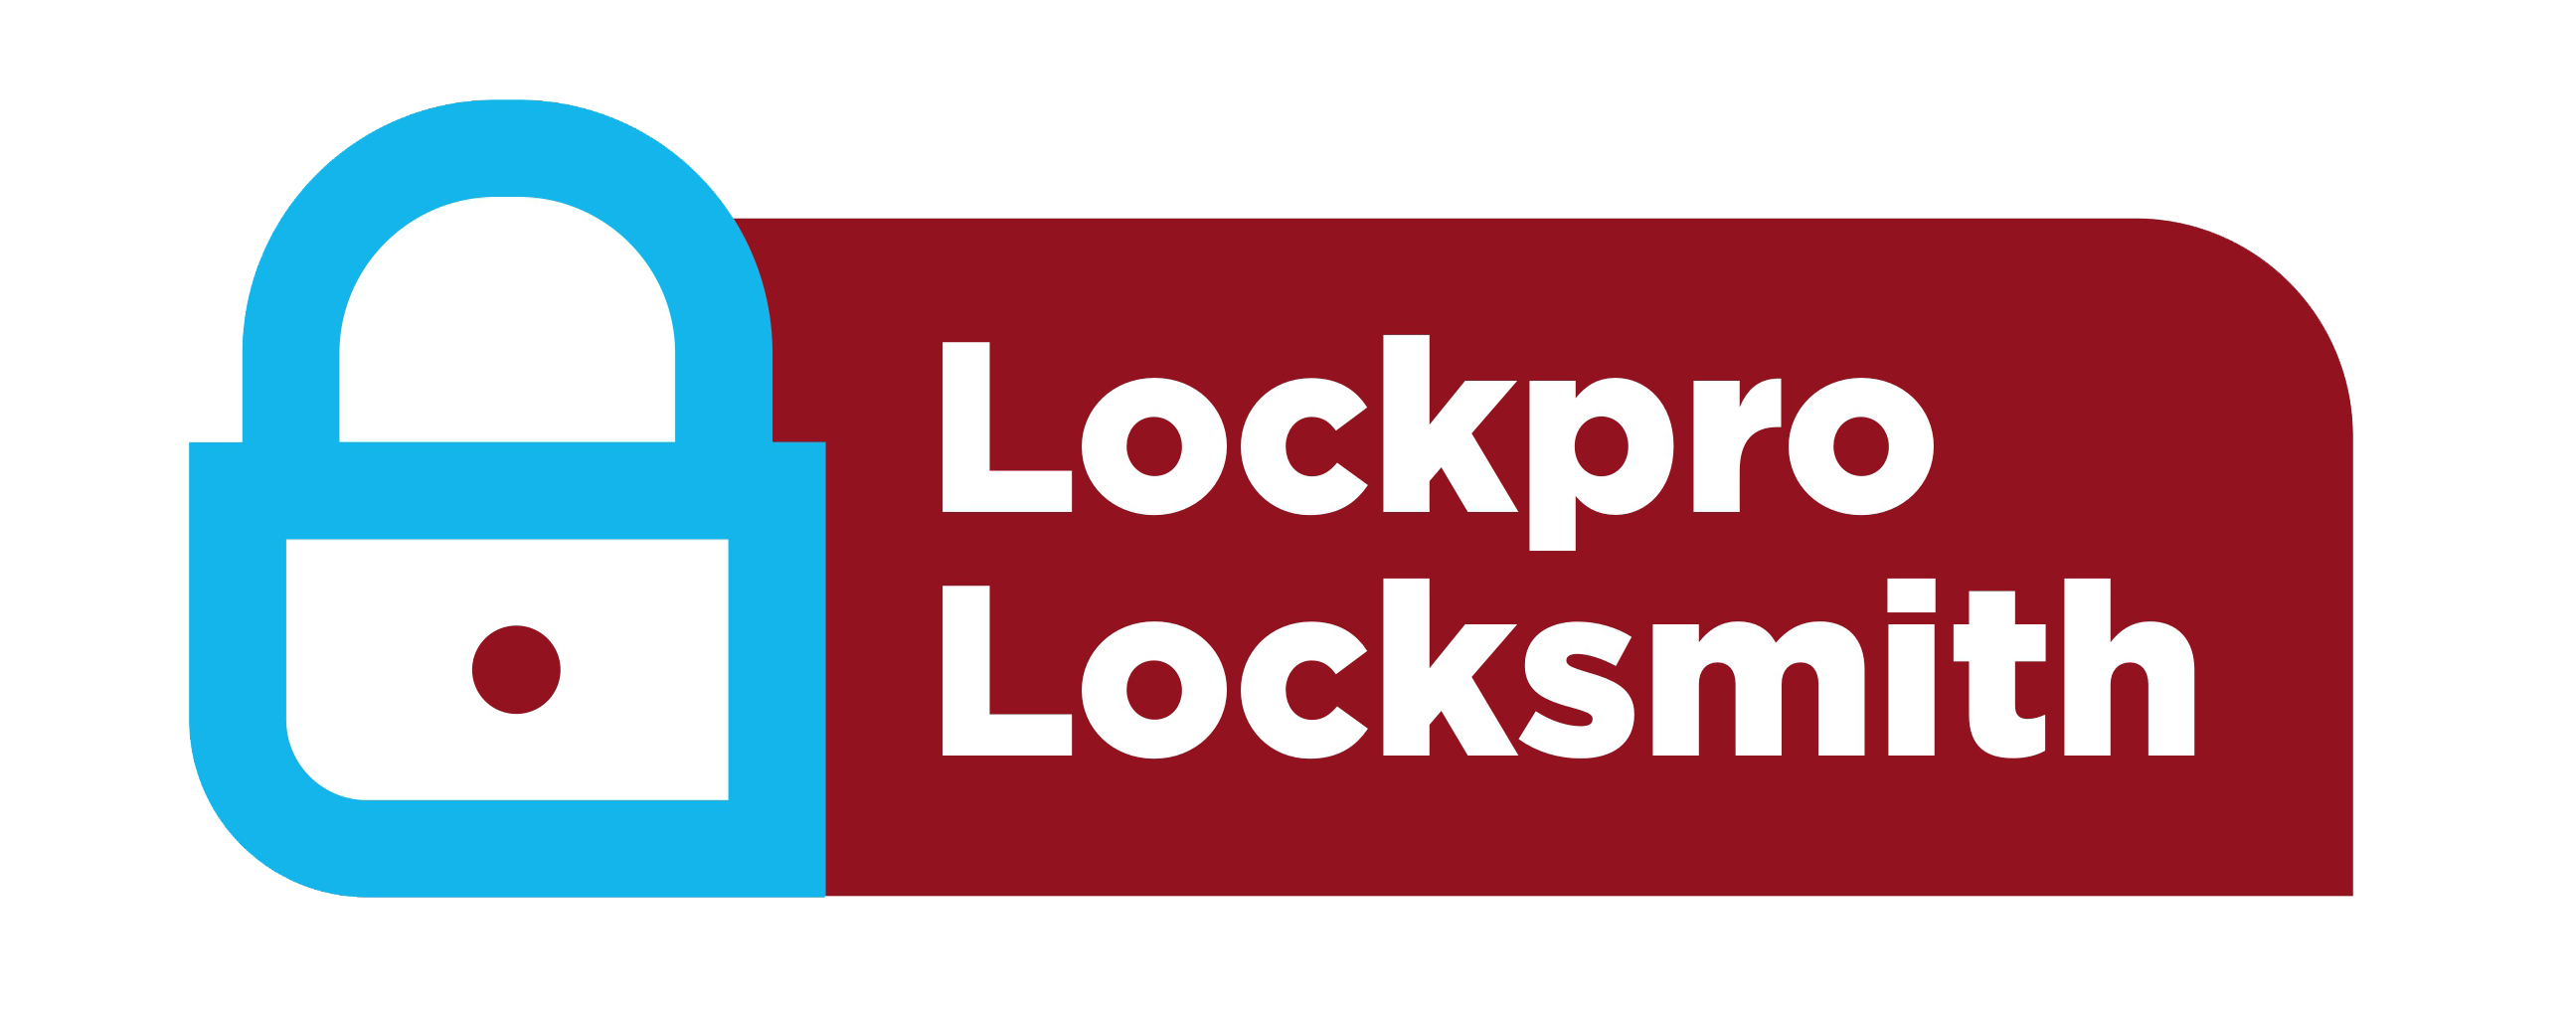 lockpro-locksmiths_design_3_footer